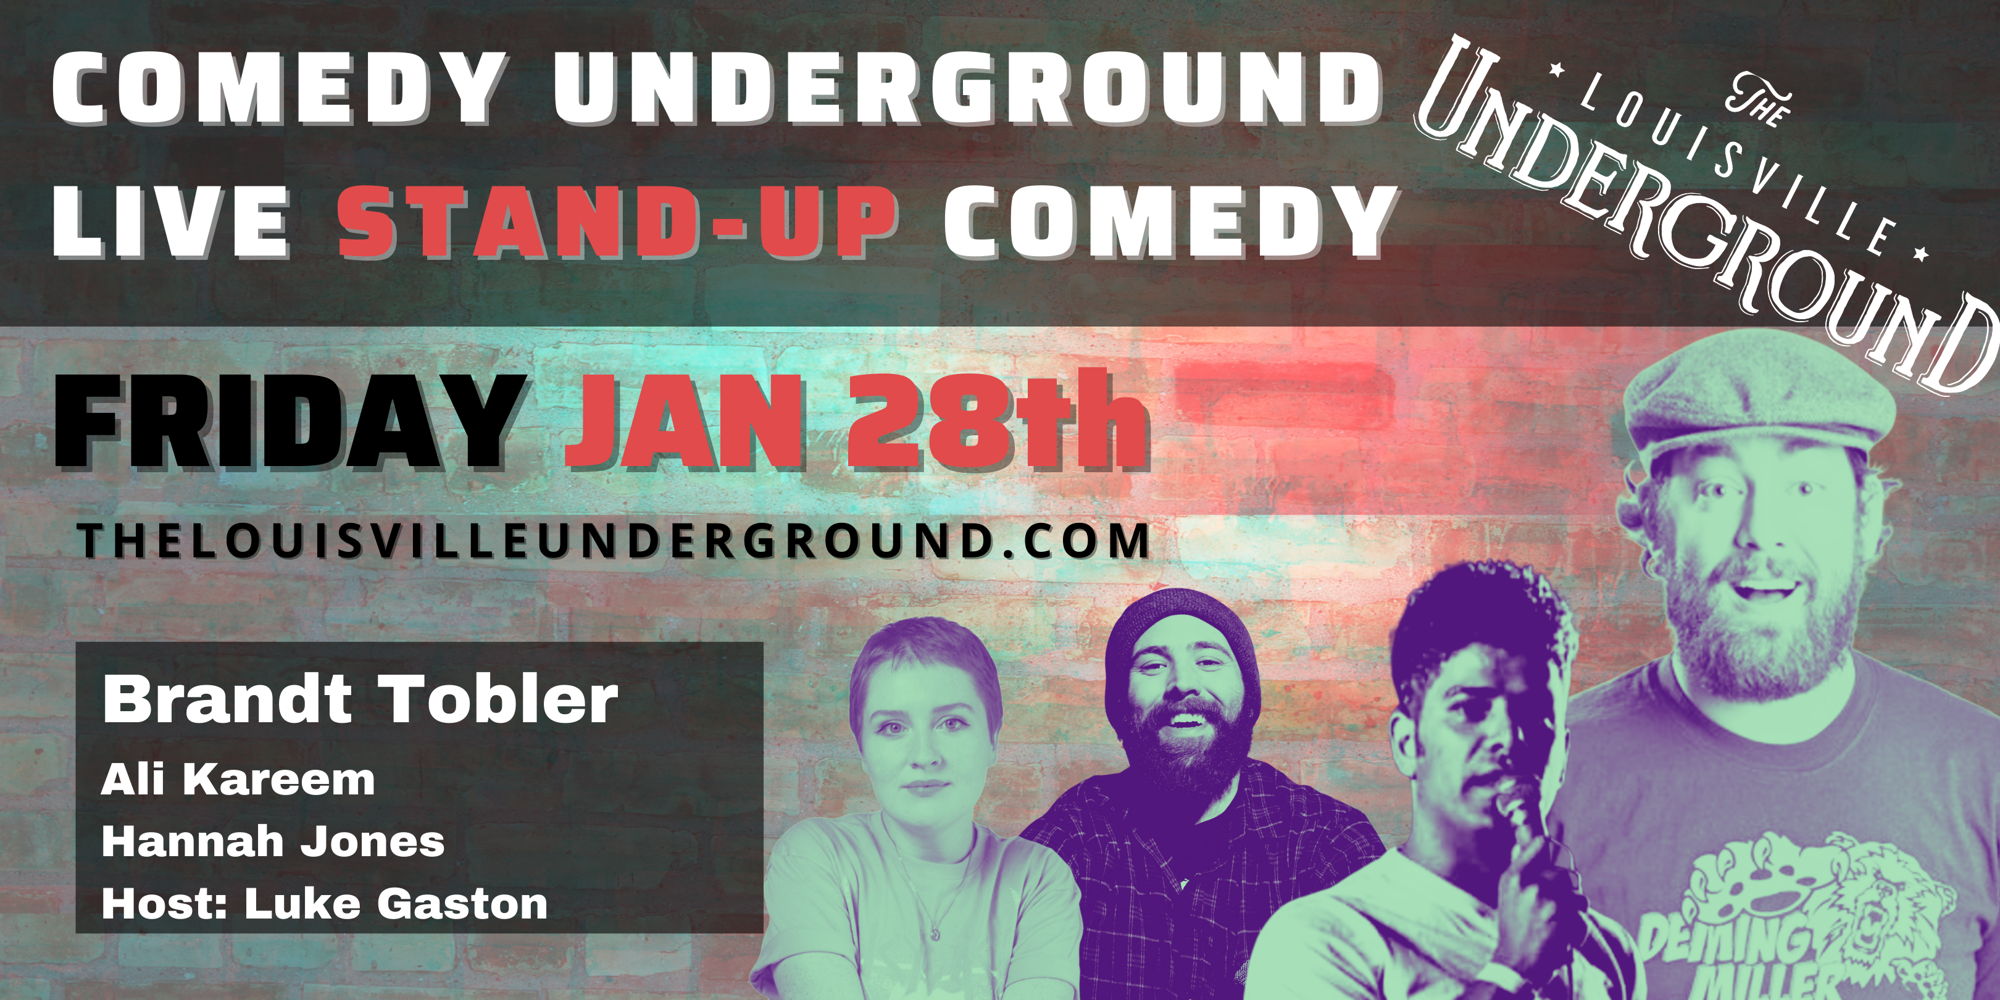 Comedy Underground with Host Luke Gaston promotional image